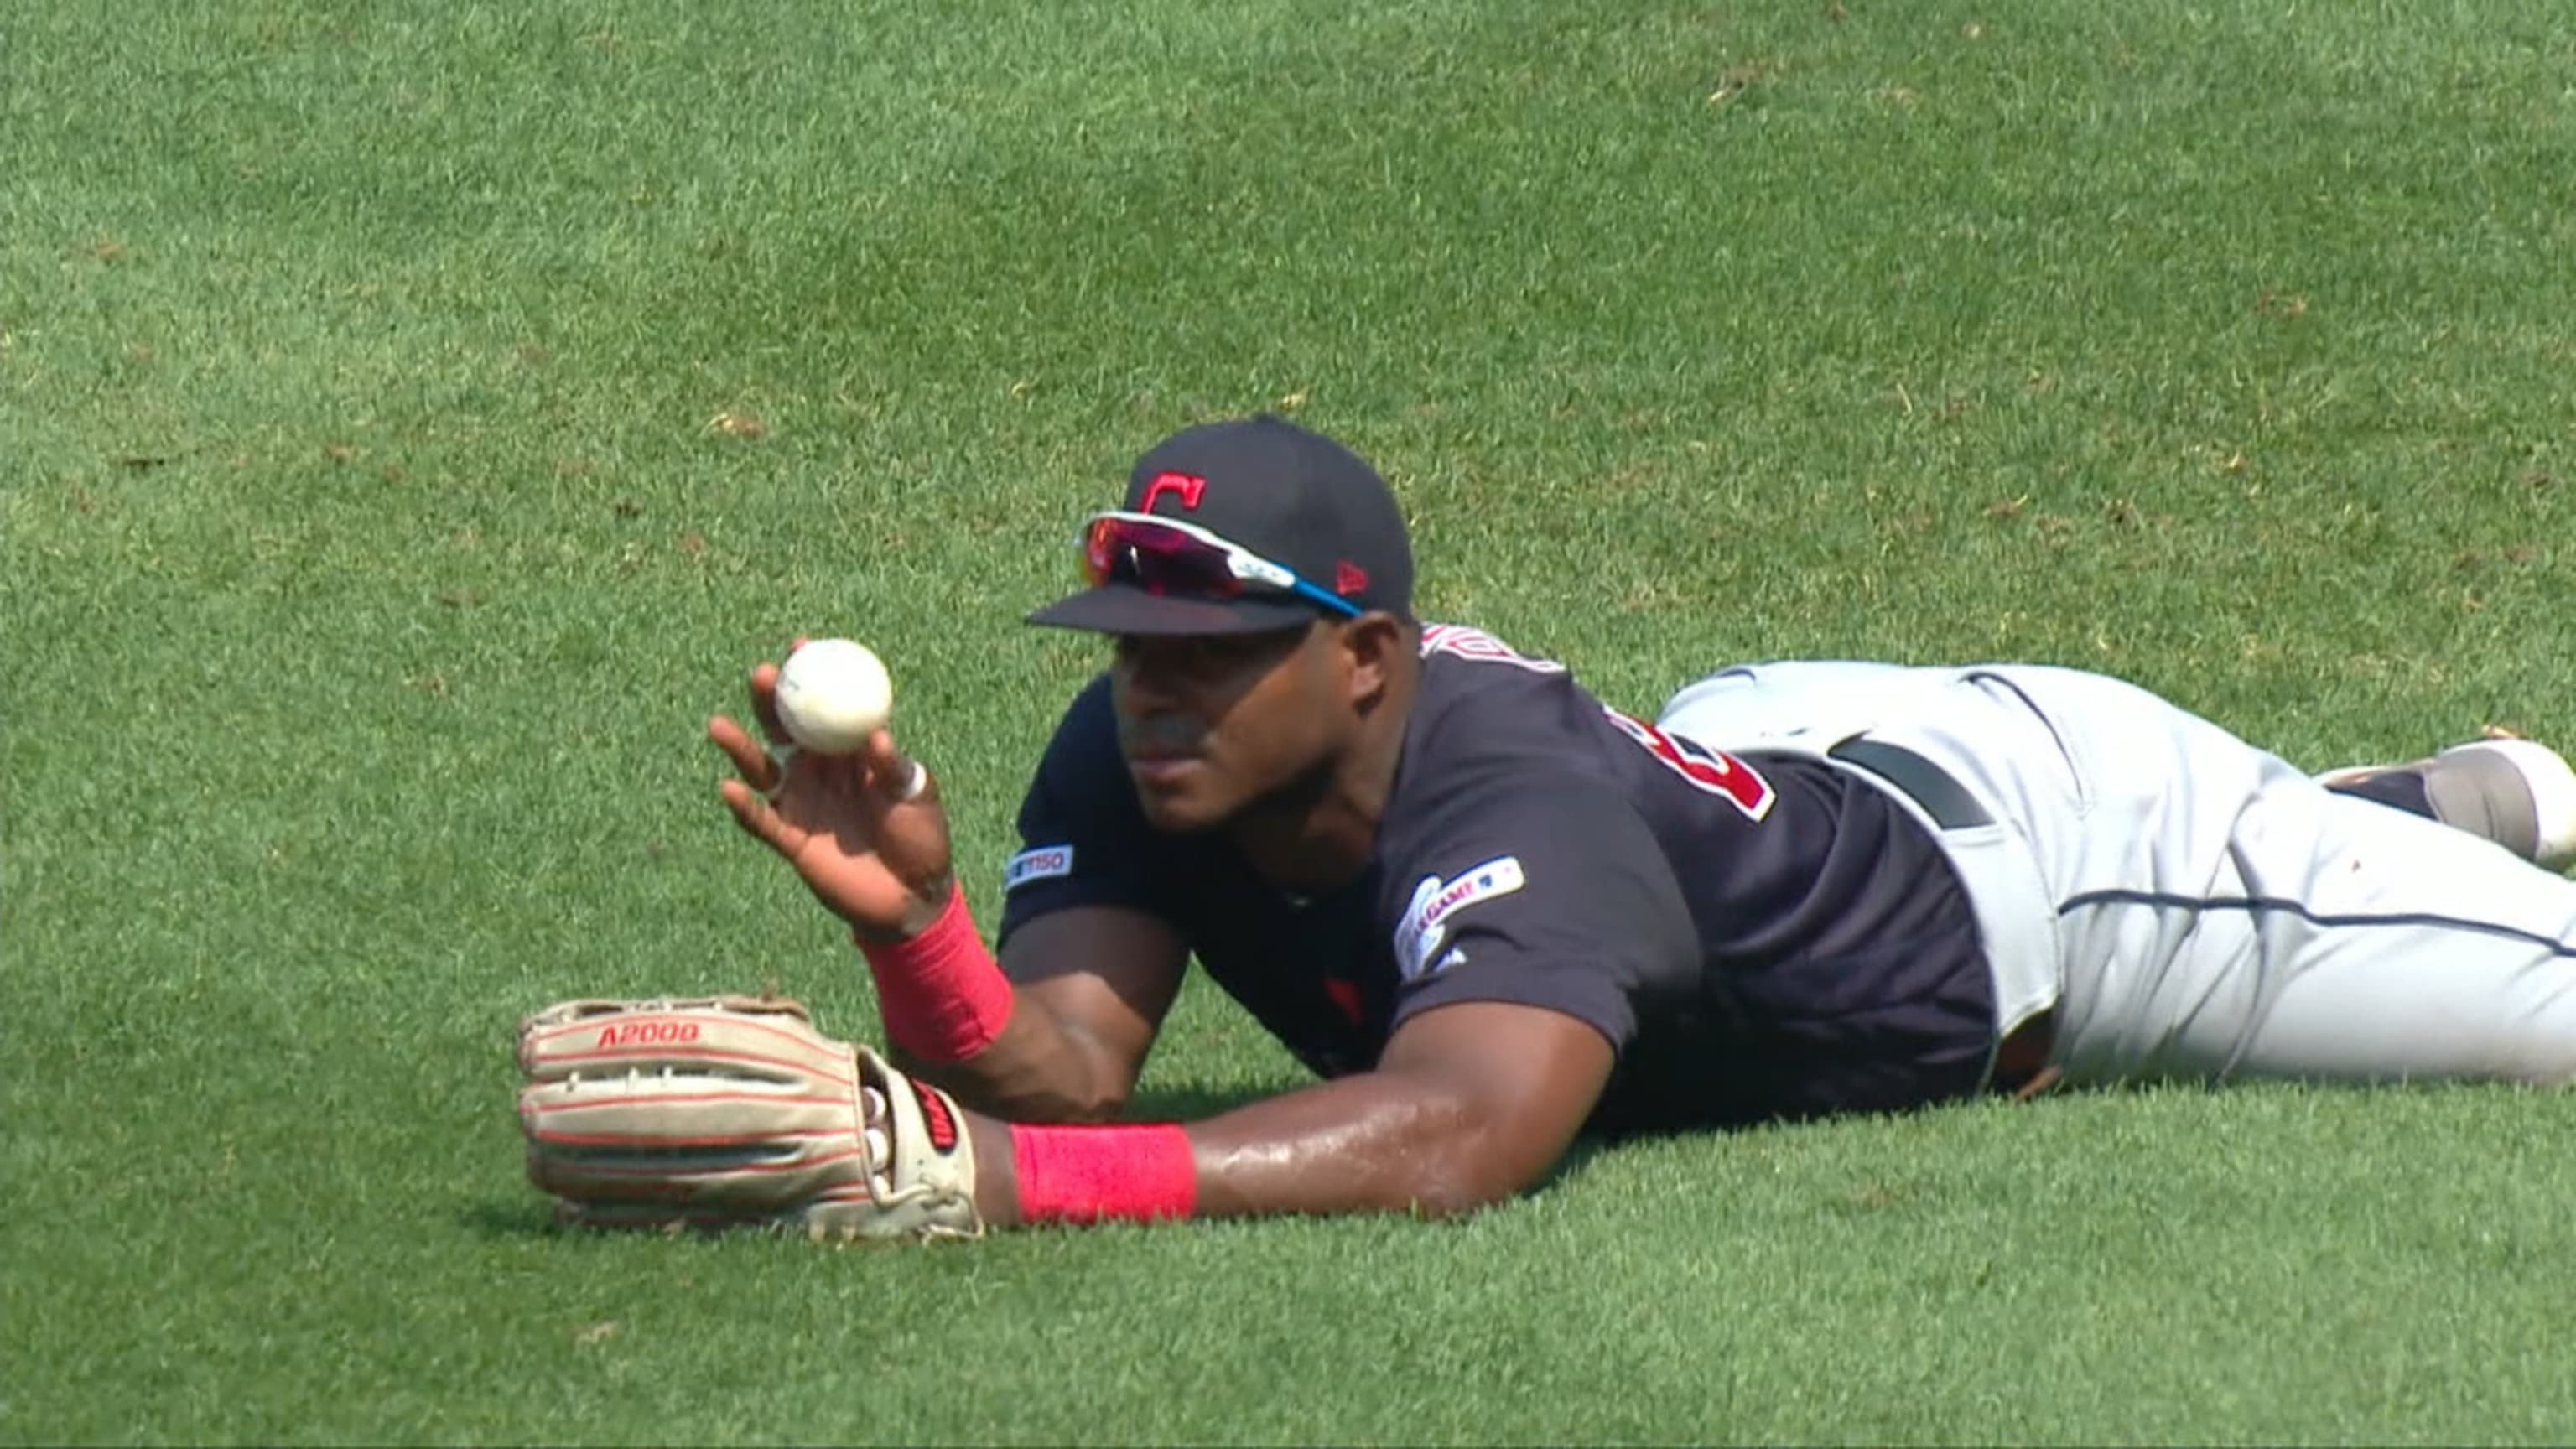 Little League World Series player has weird stance